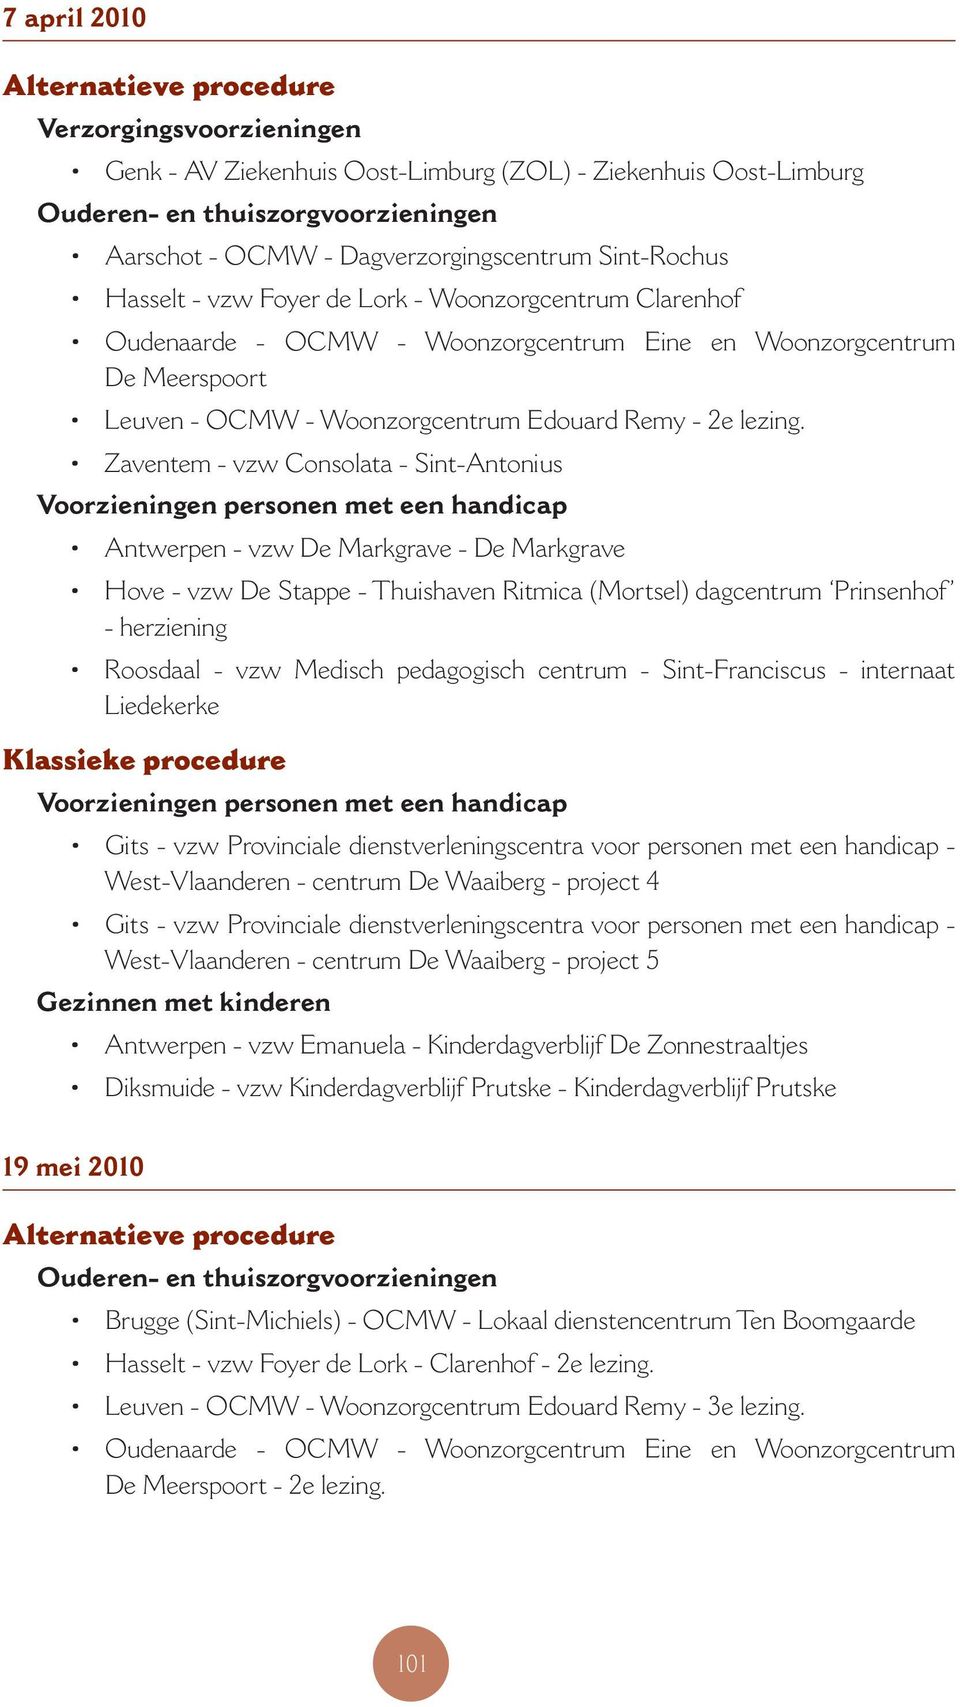 Zaventem - vzw Consolata - Sint-Antonius Antwerpen - vzw De Markgrave - De Markgrave Hove - vzw De Stappe - Thuishaven Ritmica (Mortsel) dagcentrum Prinsenhof - herziening Roosdaal - vzw Medisch